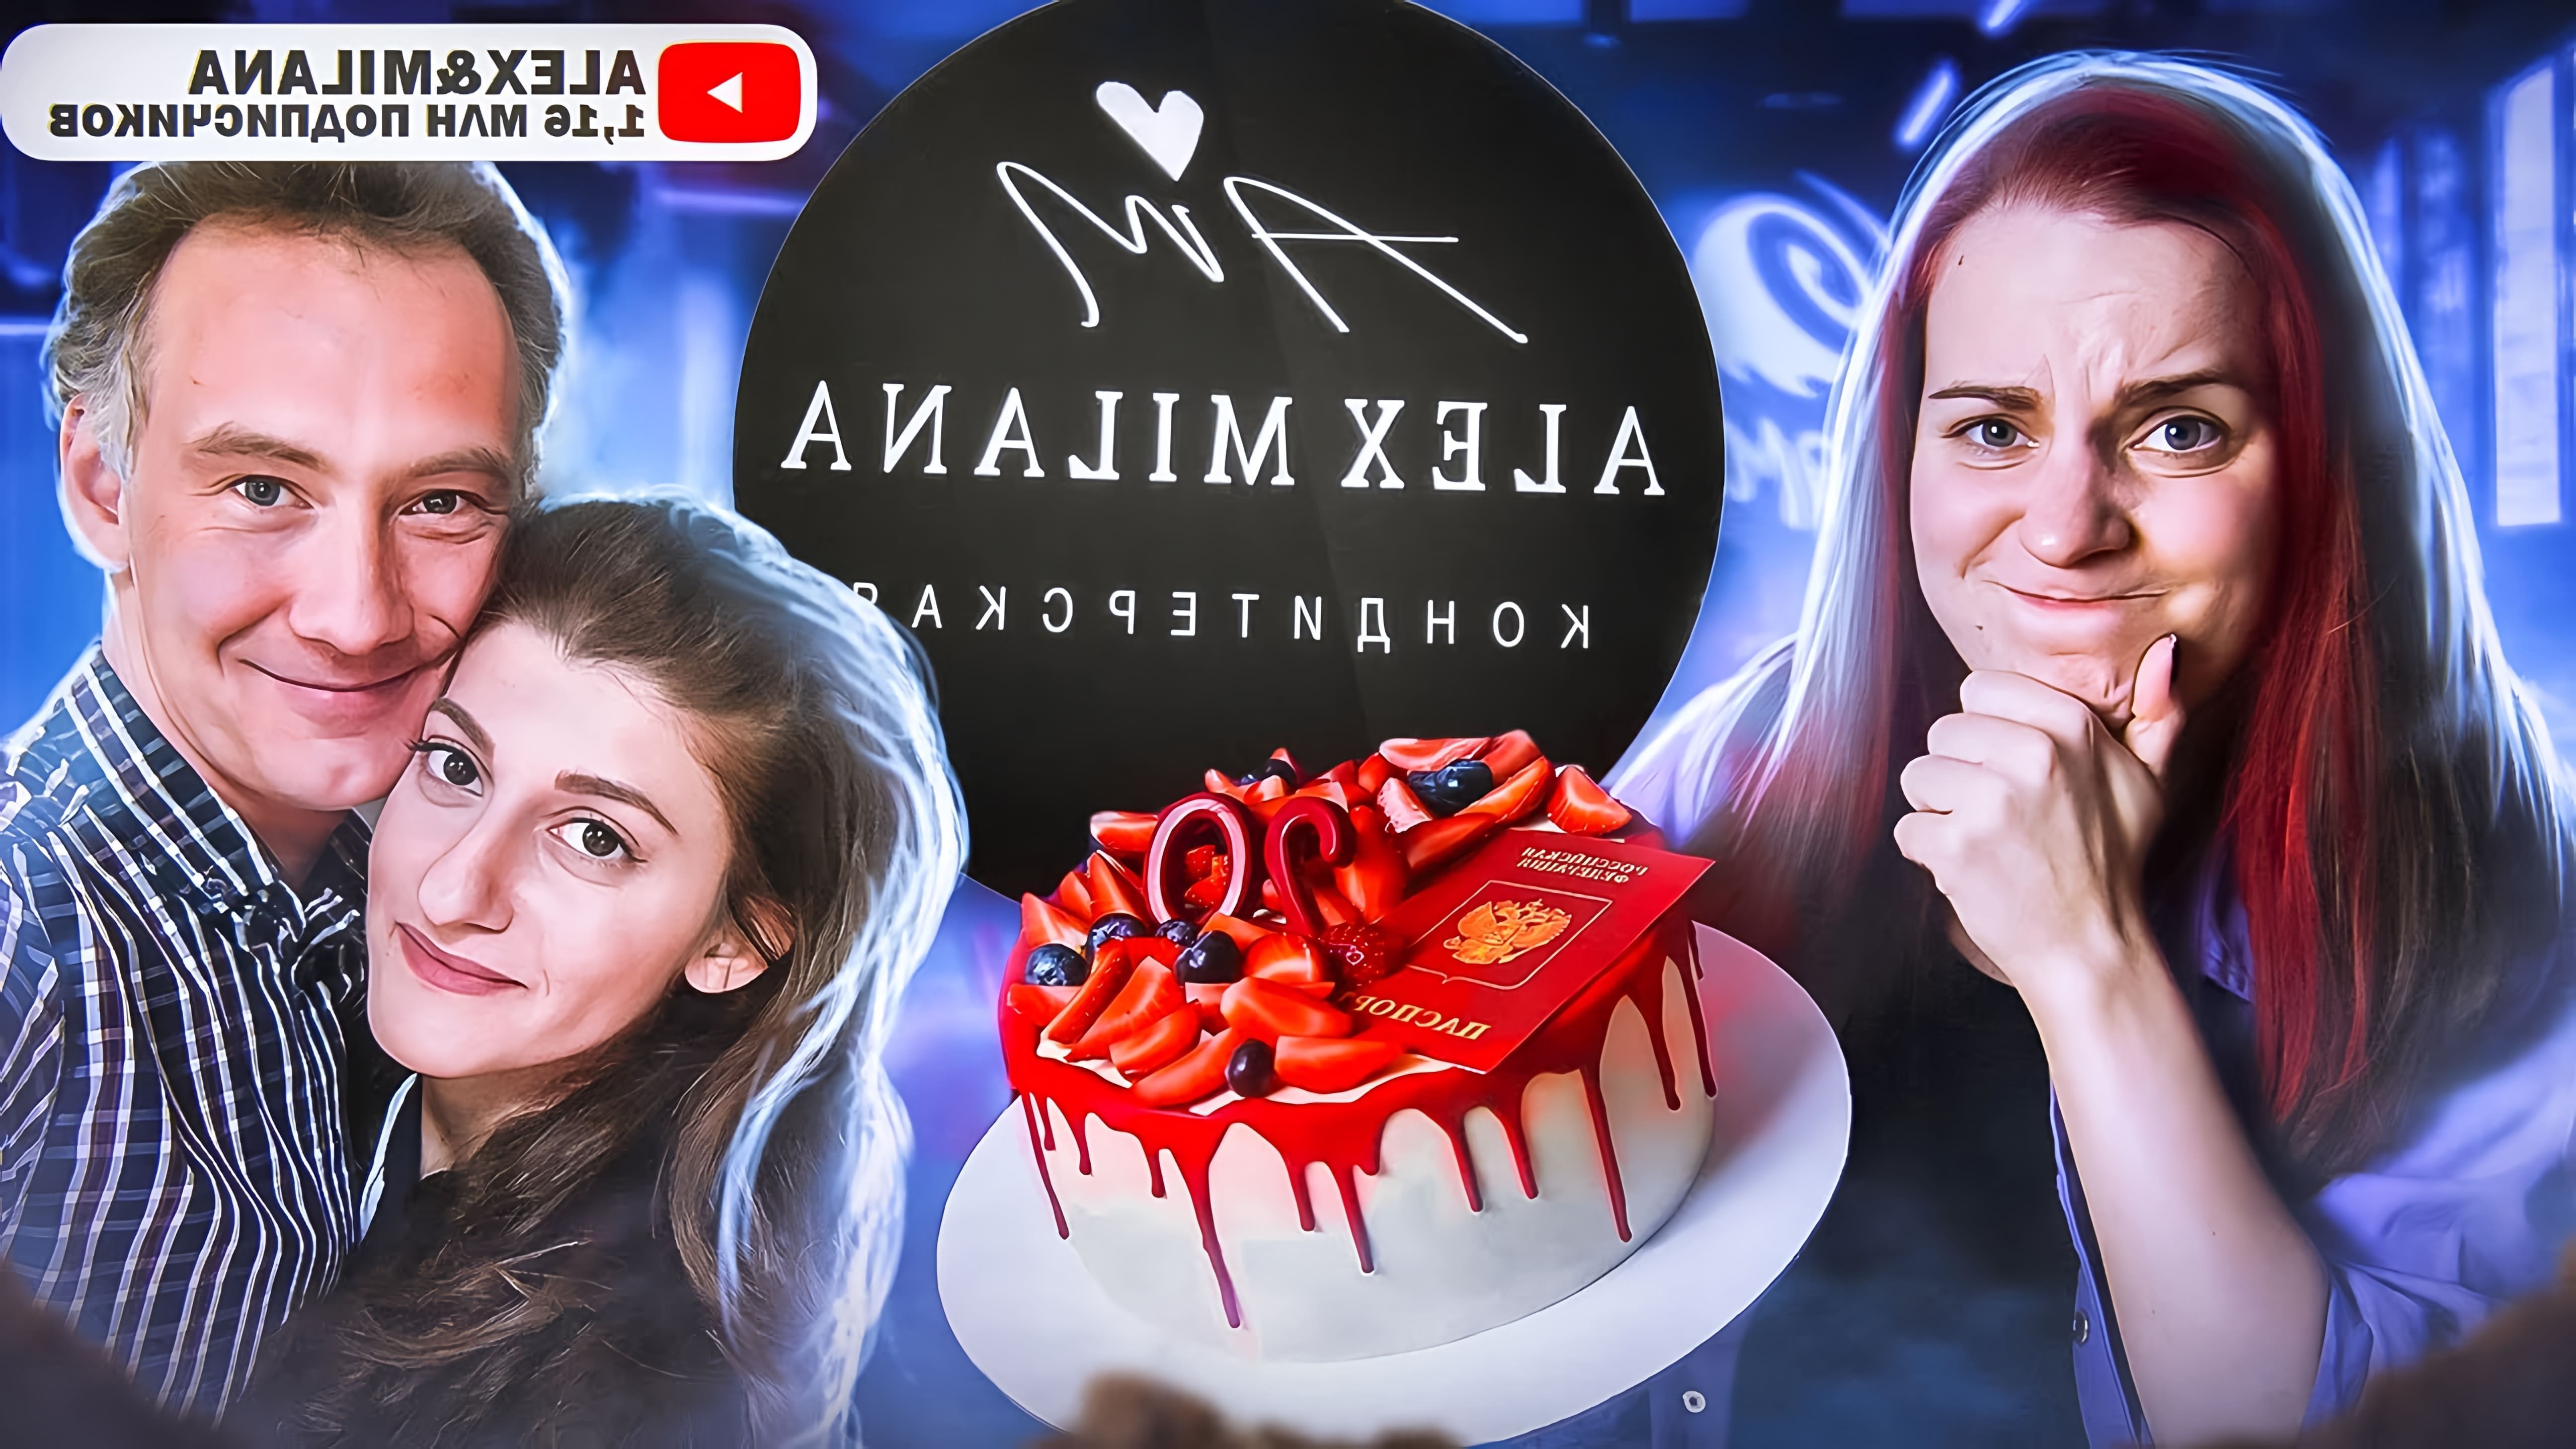 В данном видео девушка заказывает торт у кондитерской Alex&Milana и оценивает его вкус и качество